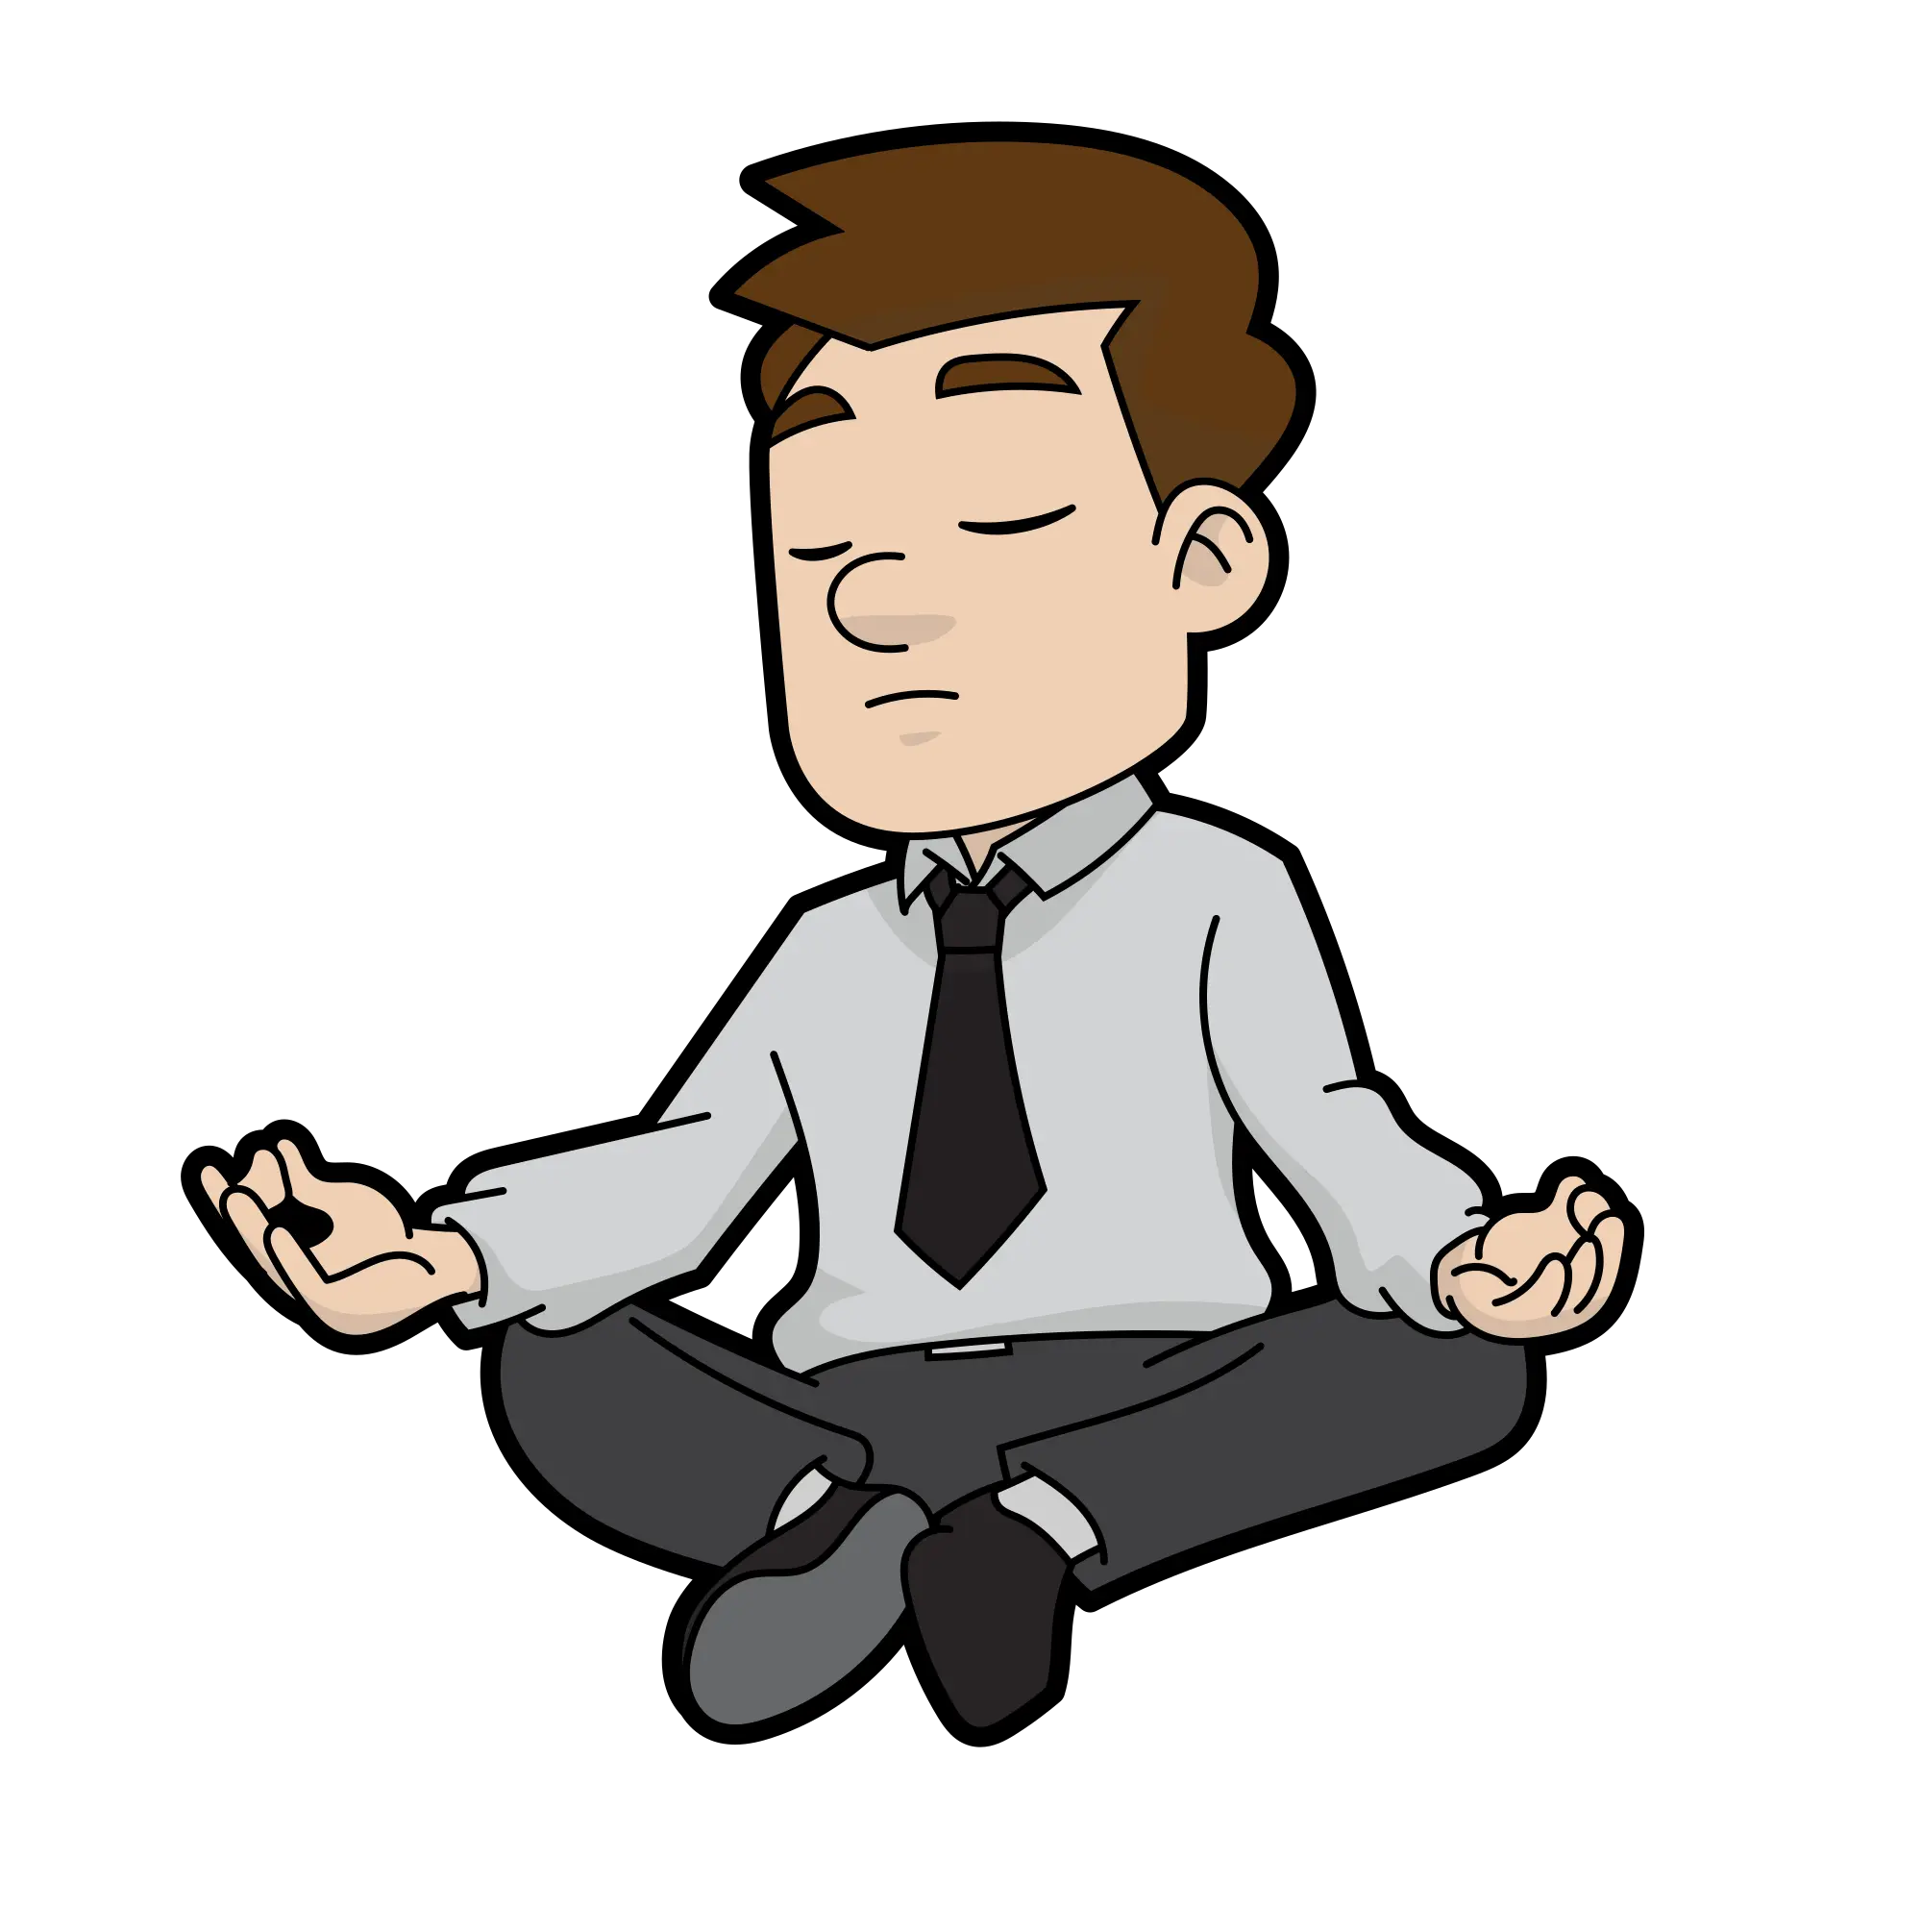 Filecartoon Meditating Mansvg Wikimedia Commons Cartoon Meditating Png Sitting Man Png